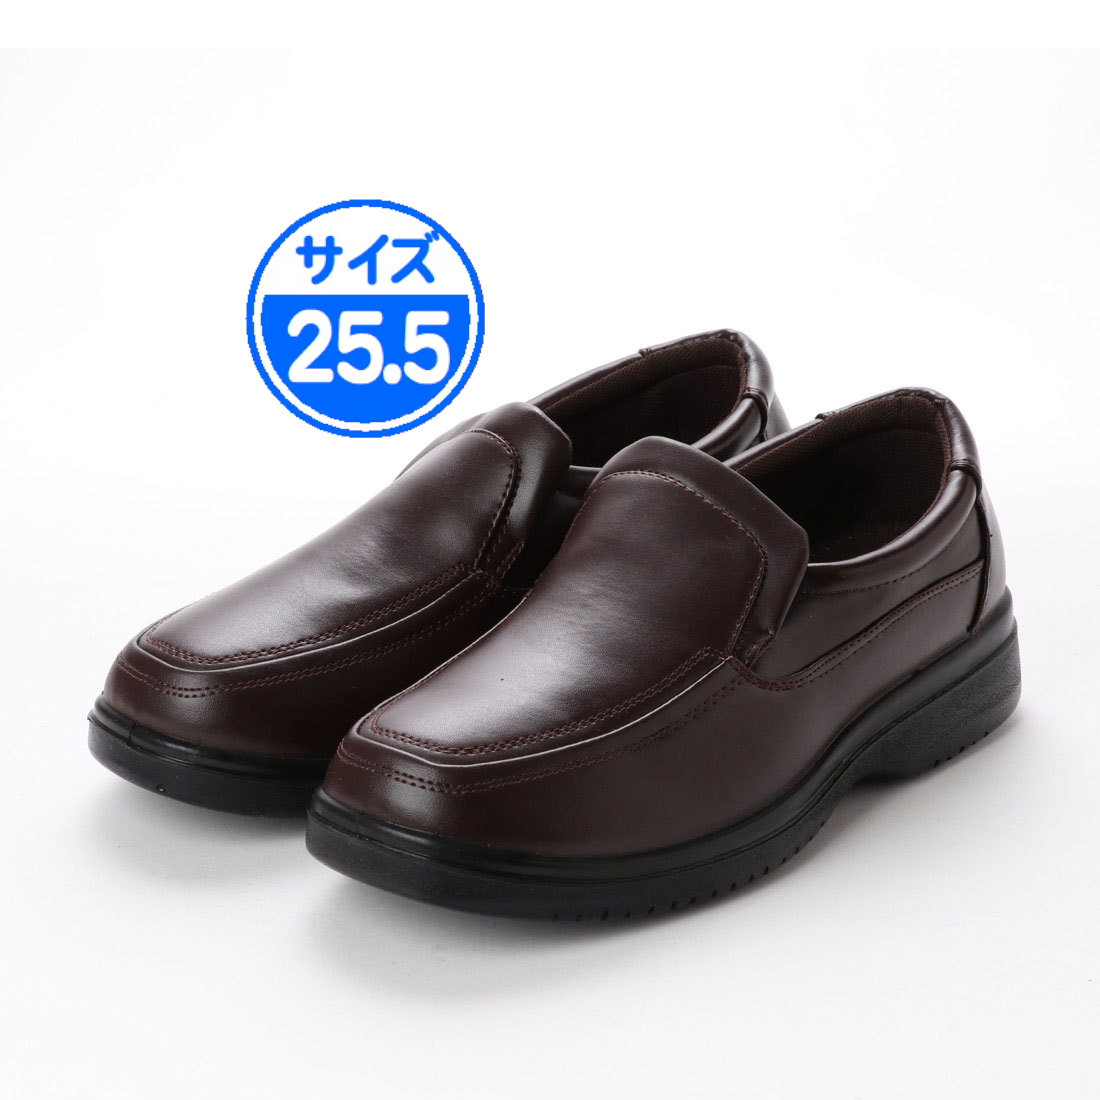 【 новый товар   неиспользуемый  】  повседневный  обувь    коричневый  25.5cm  чай   цвет  15108